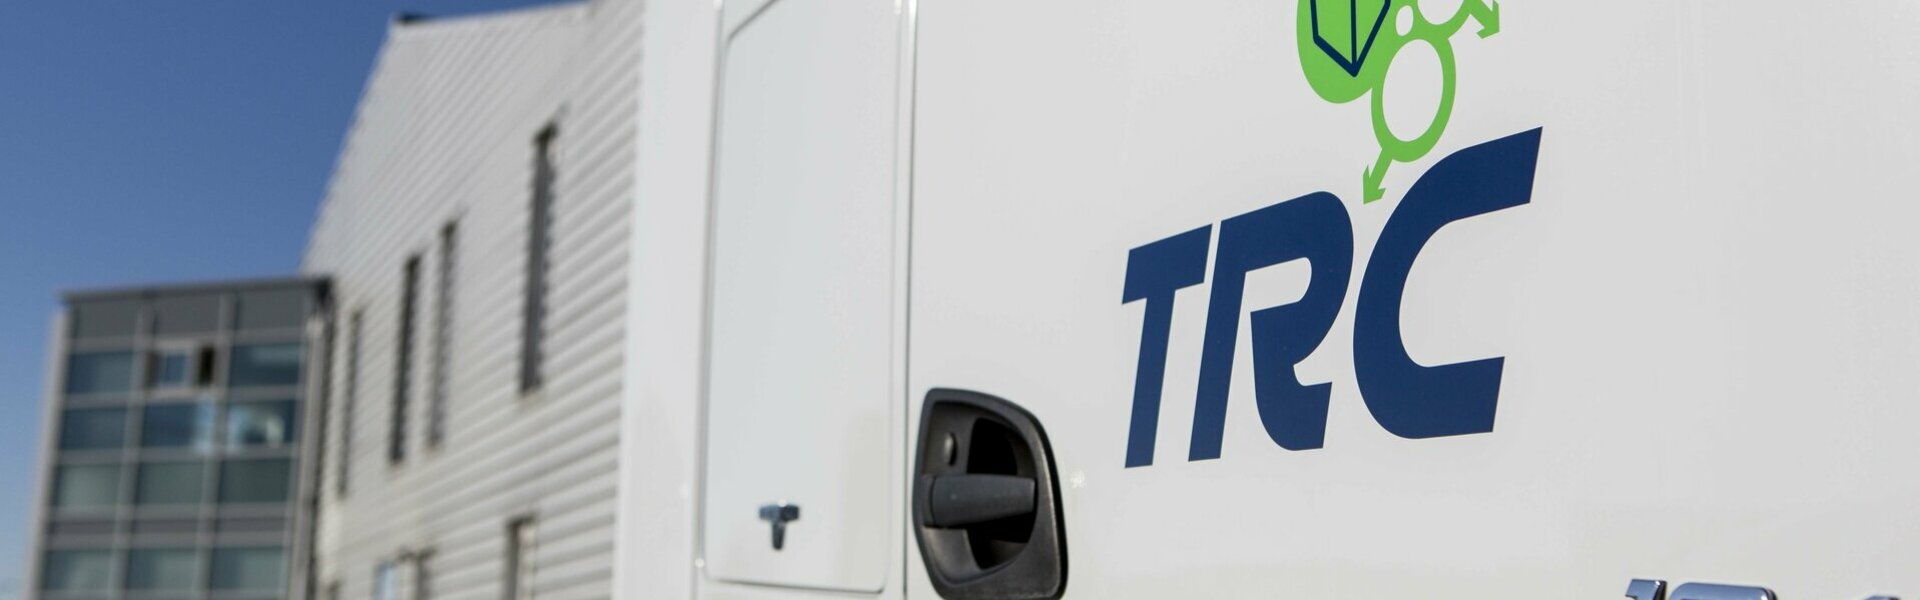 Transport rapide Cantalien, TRC acteur majeur dans le transport dans le Cantal en Auvergne